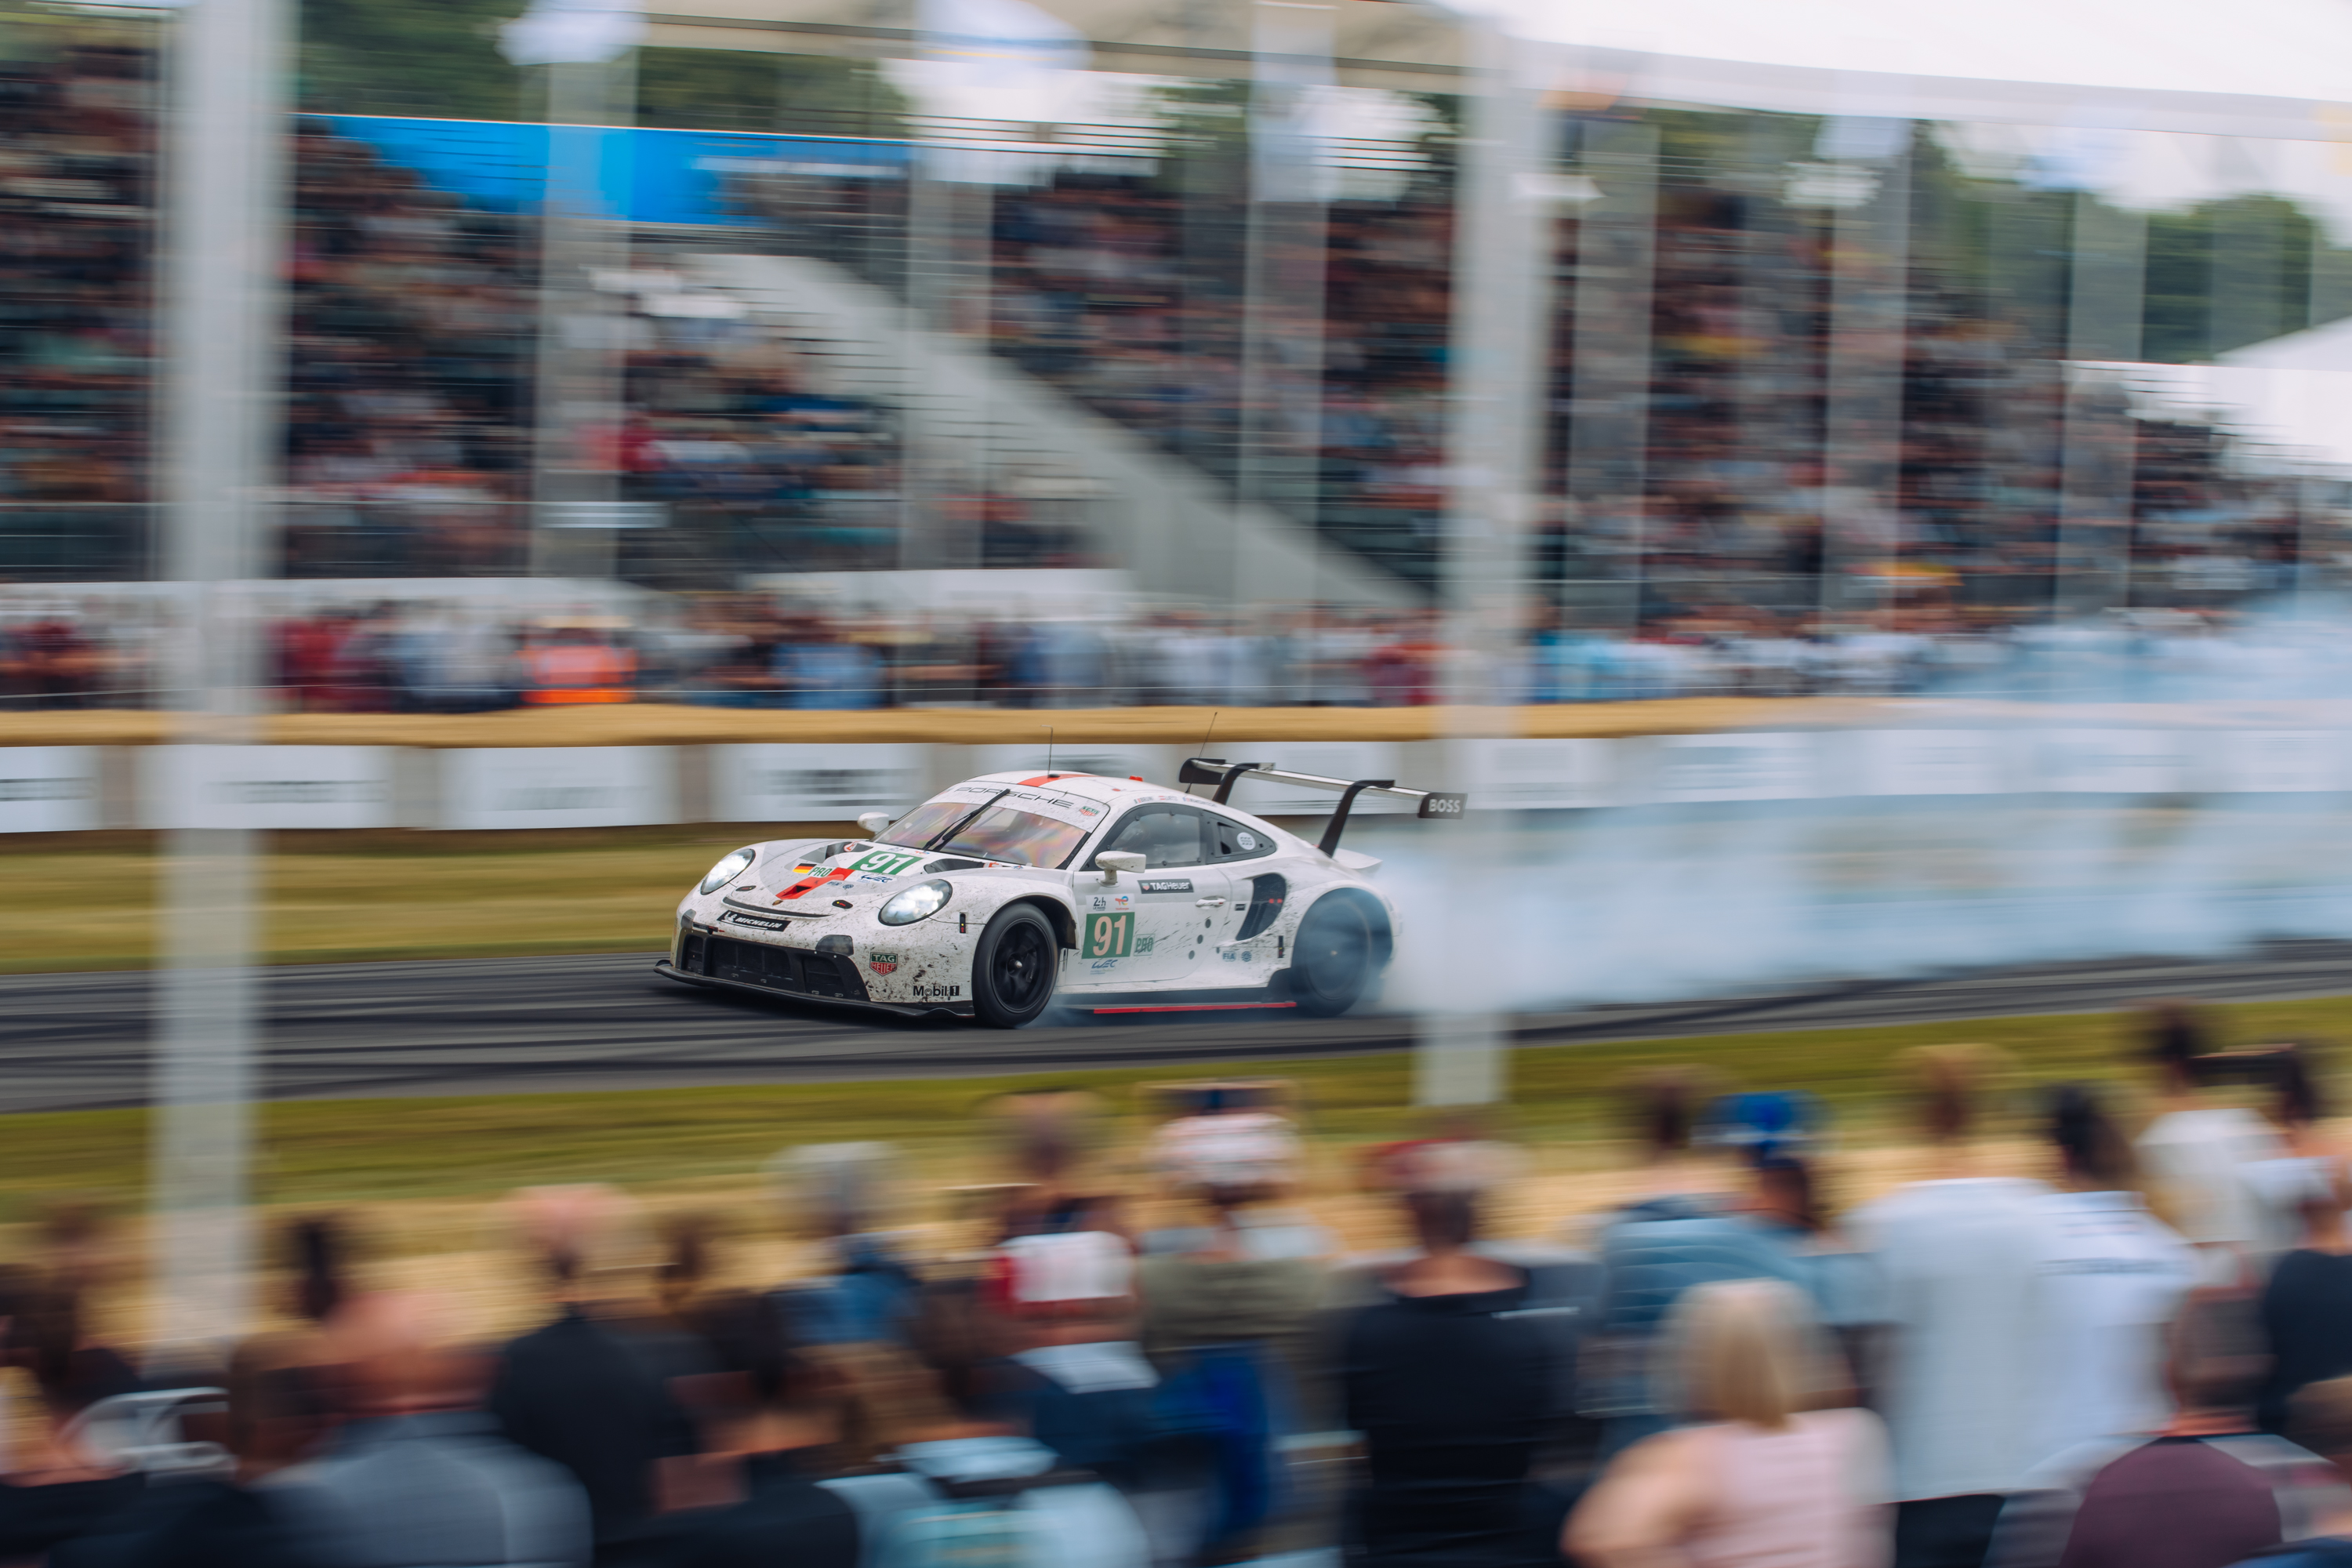 2022 Le Mans-winning #91 Porsche 911 RSR at Goodwood